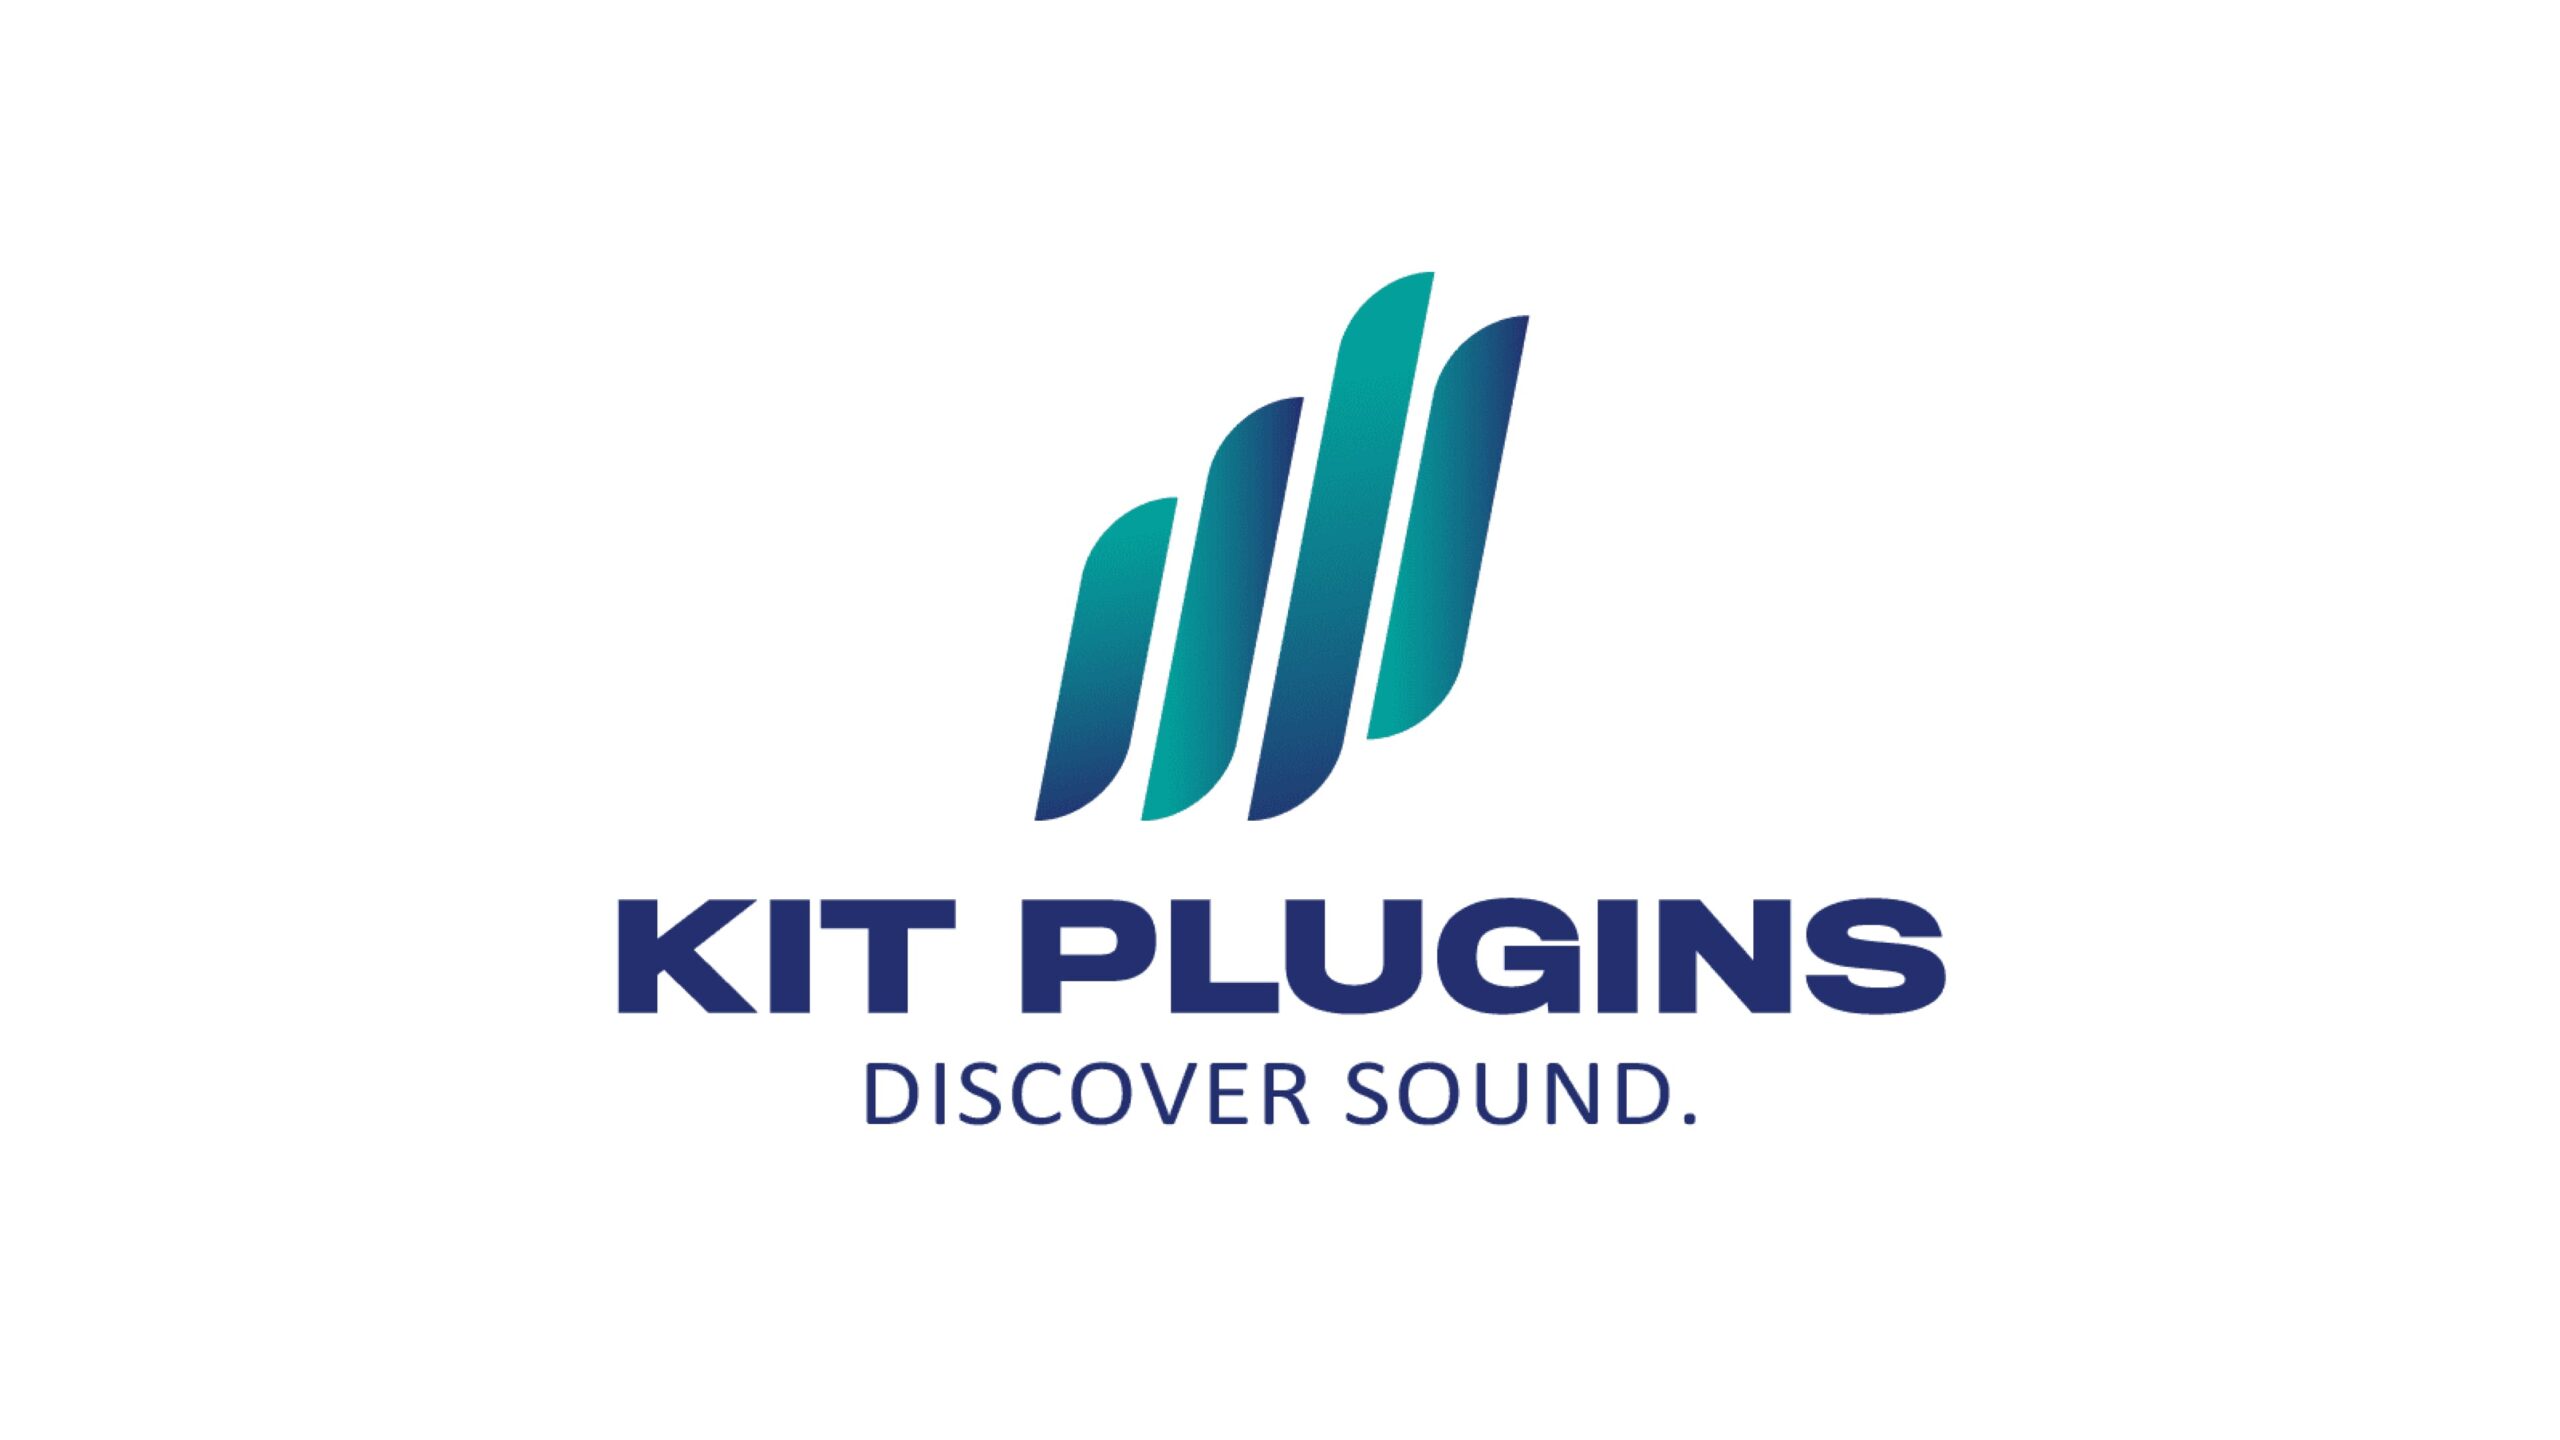 プロデューサーやミュージシャンのサウンド向上を支援するオーディオ・ソフトウェア新興企業KIT Pluginsが100万ドルを調達